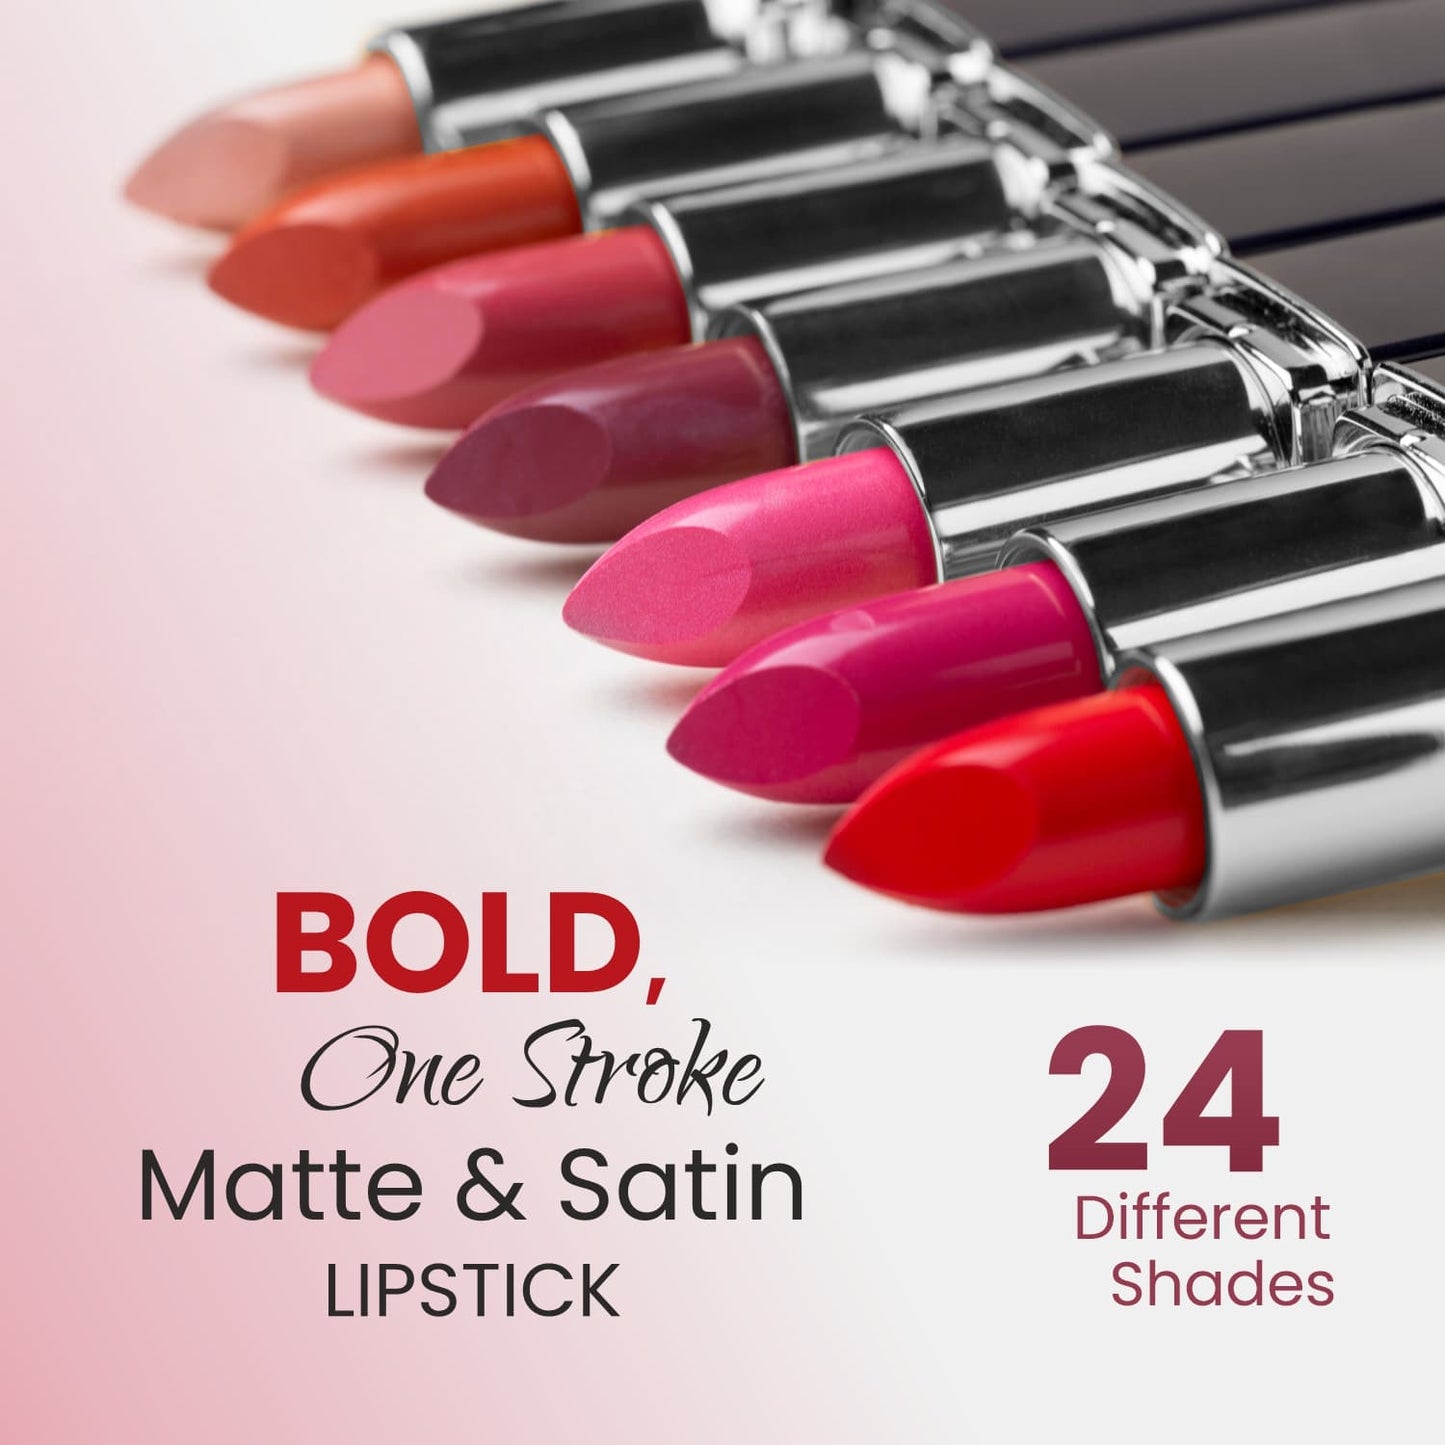 Matte & Satin Lipstick - S17 Fuchsia Flash